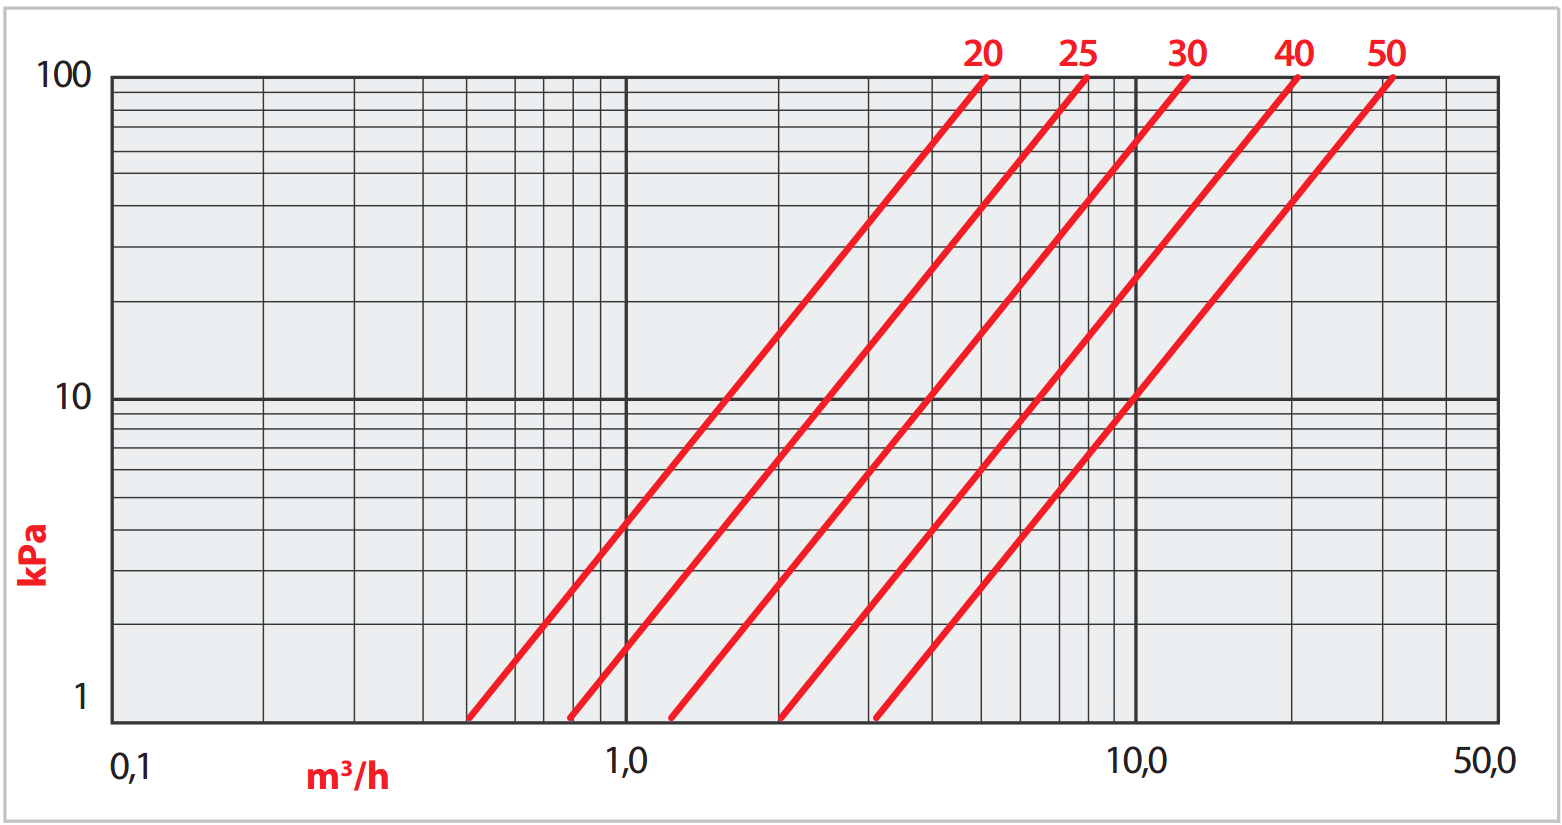 8.3 NÁVRH VODOMĚRU 8.3.1 Domovní vodoměr Na návrhový průtok Q = 17,75 m 3 /h navrhuji domovní vodoměr Enbra OBRF/50, z Graf 5 odečítám tlakovou ztrátu vodoměru při návrhovém průtoku Δp wm = 20 kpa.